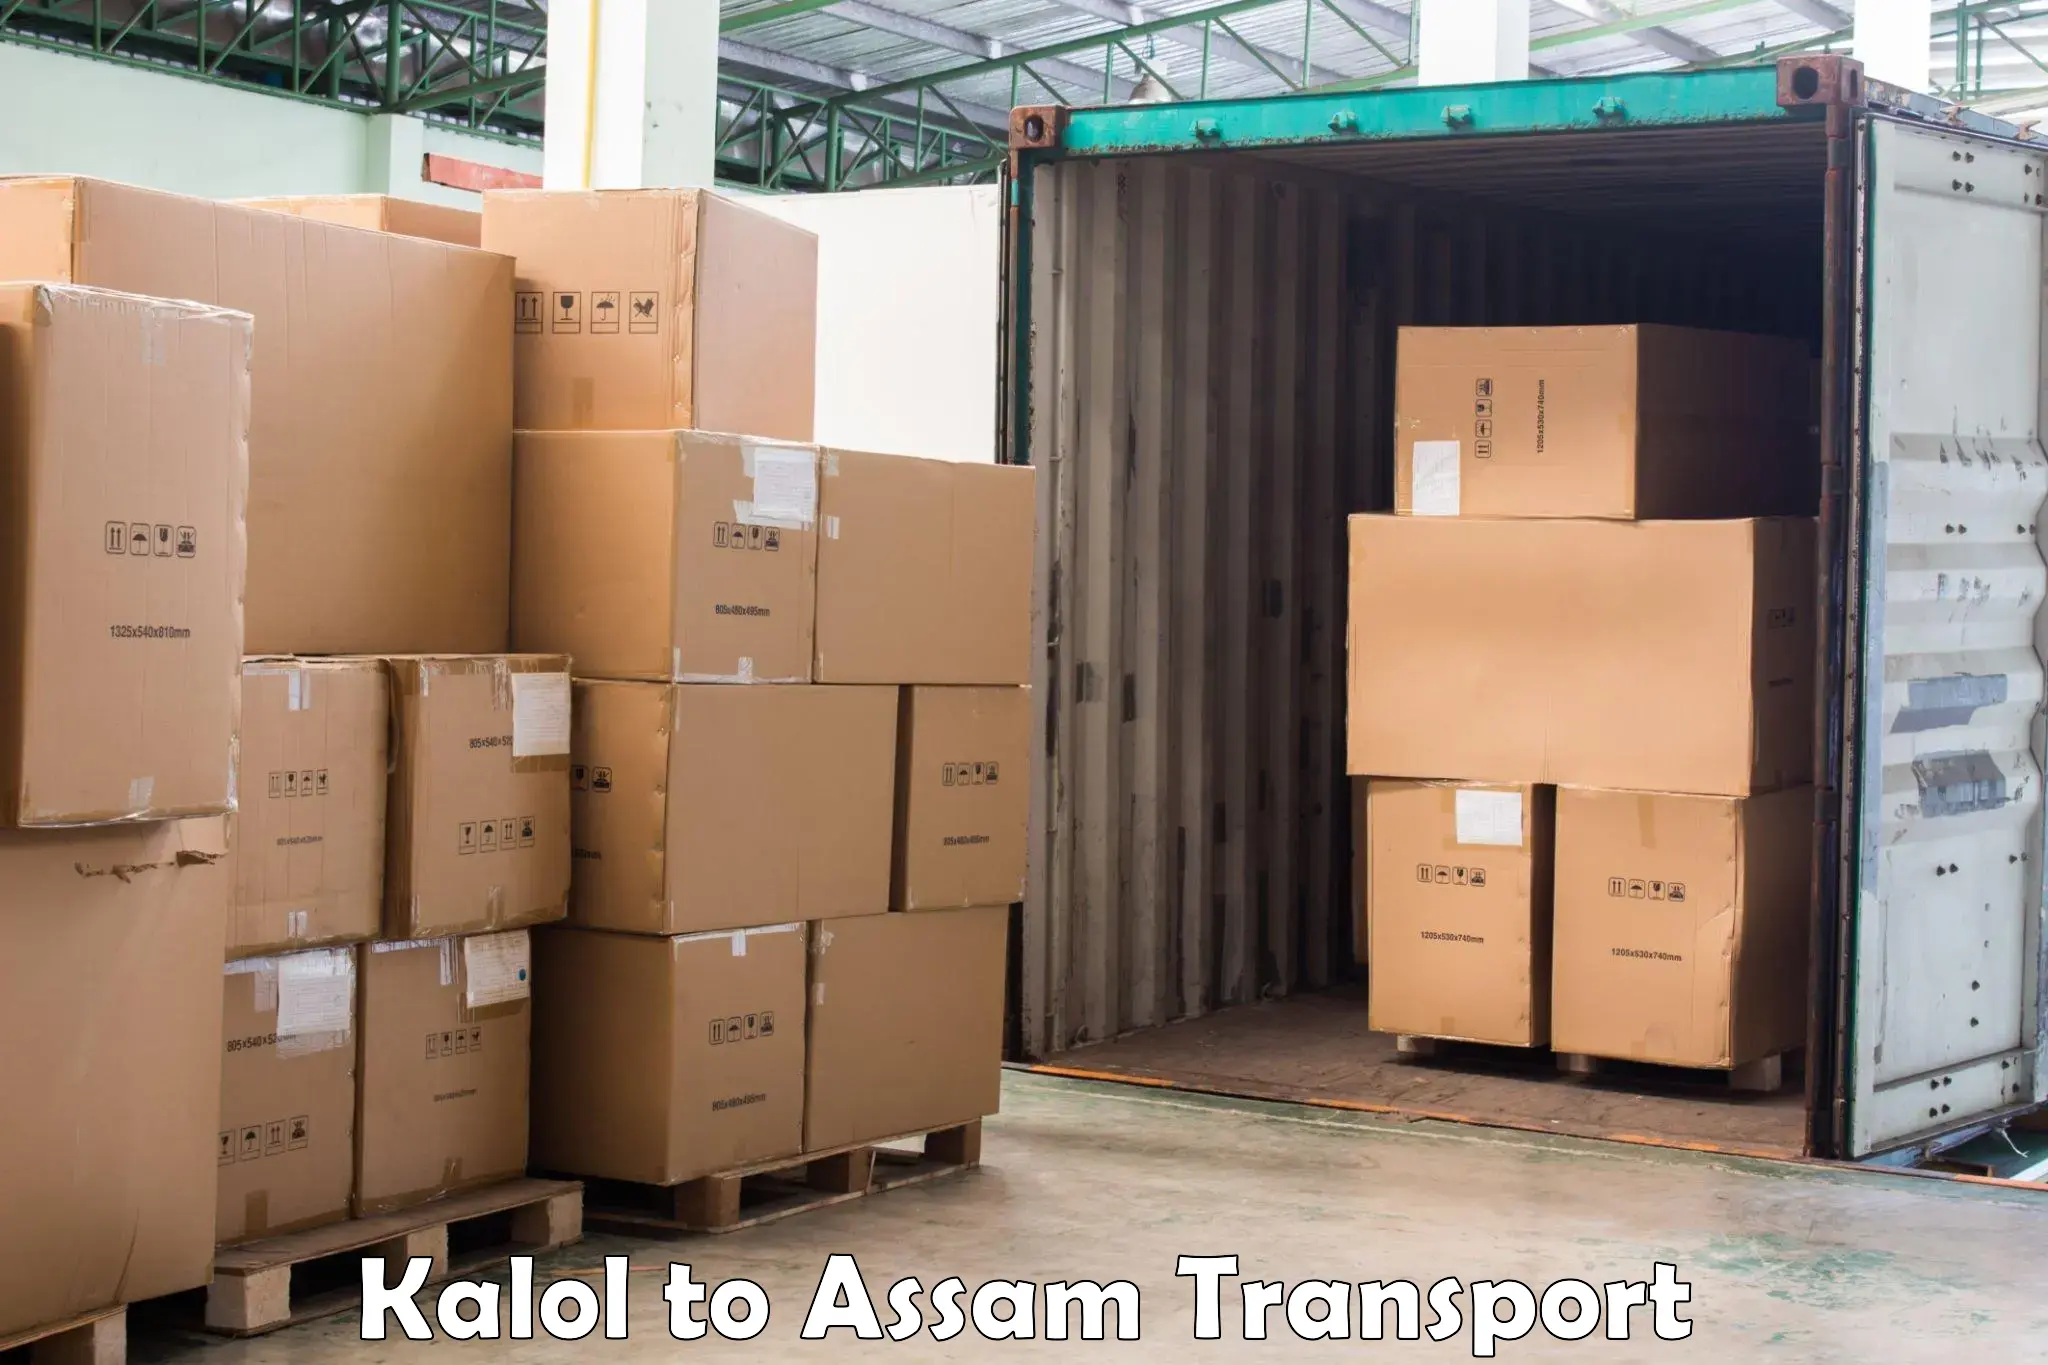 Two wheeler parcel service Kalol to Guwahati